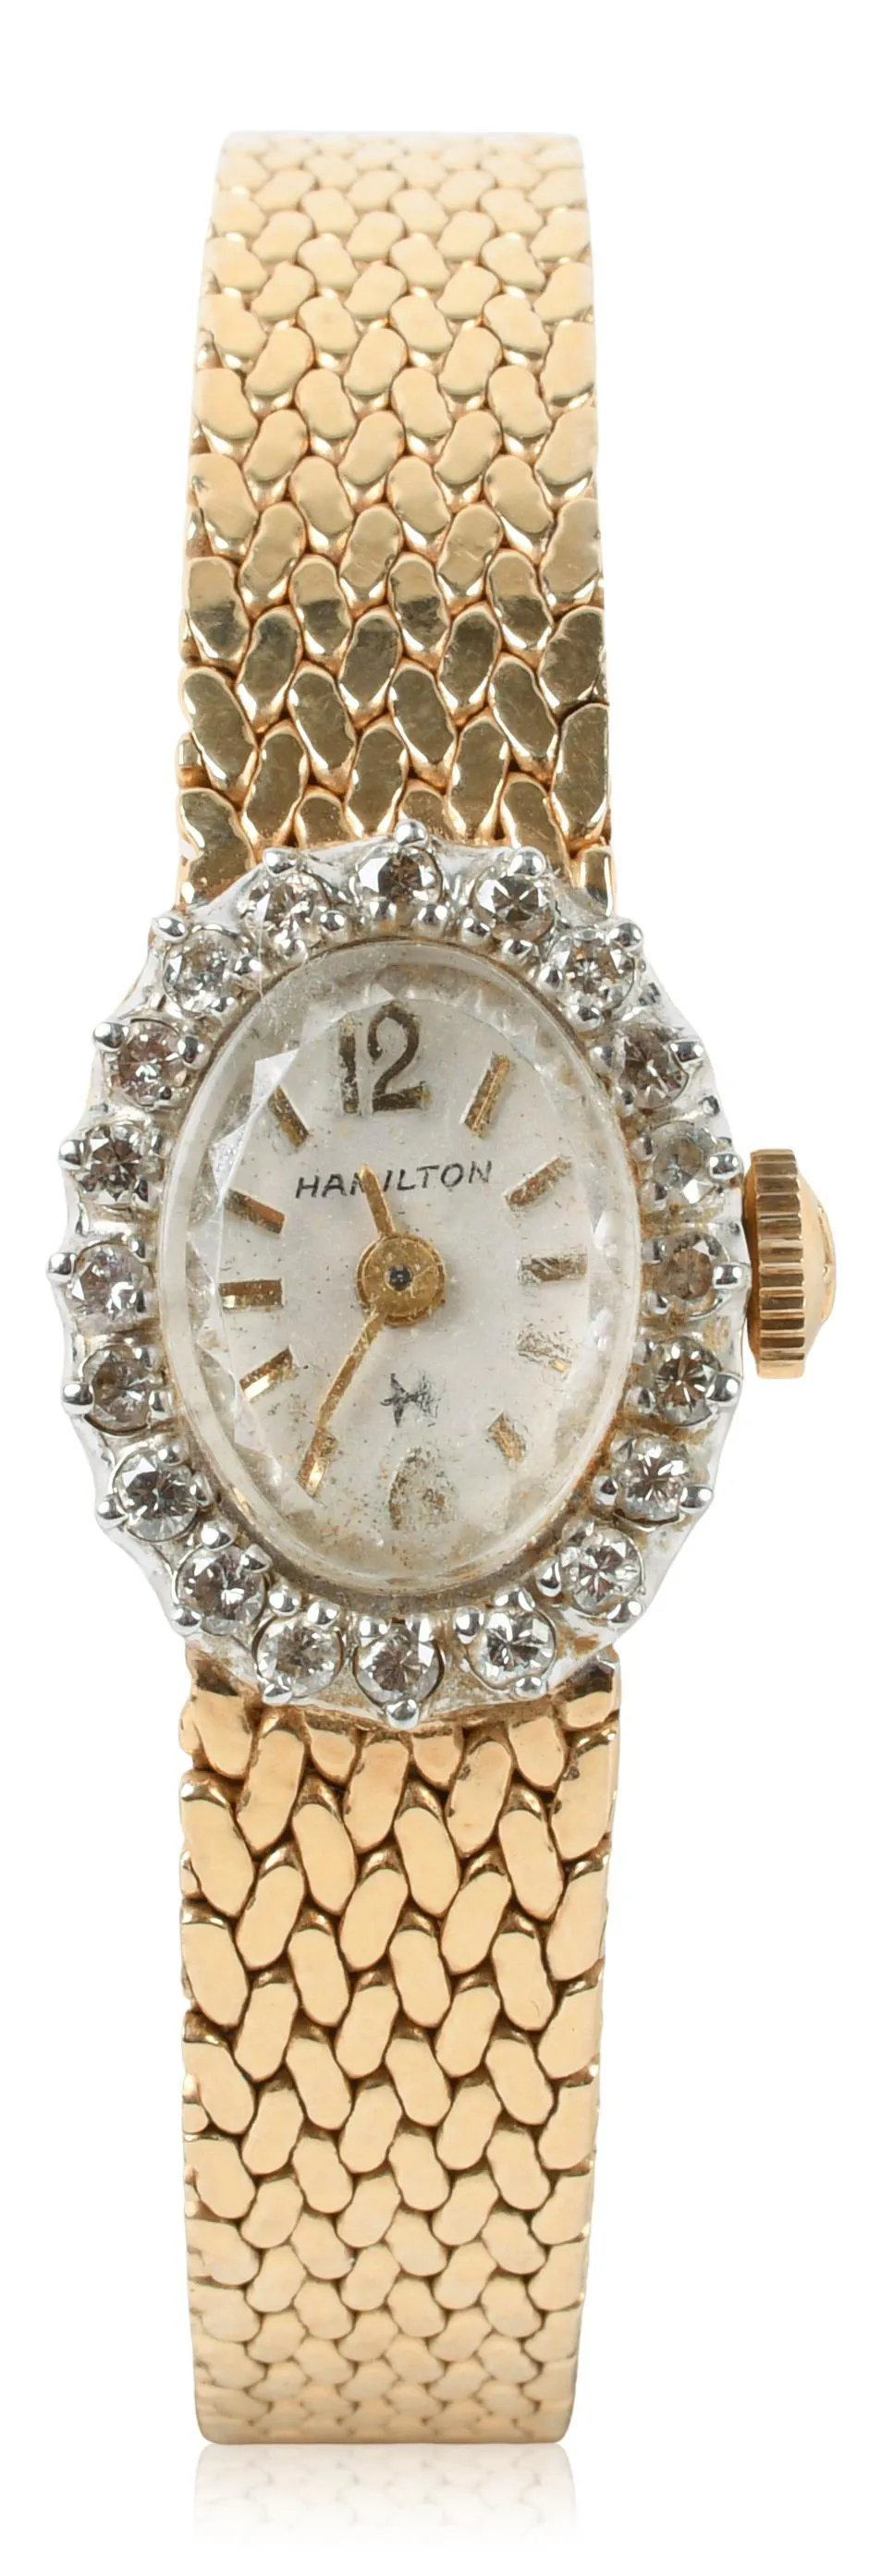 Hamilton 10.5mm Yellow gold and diamond-set White